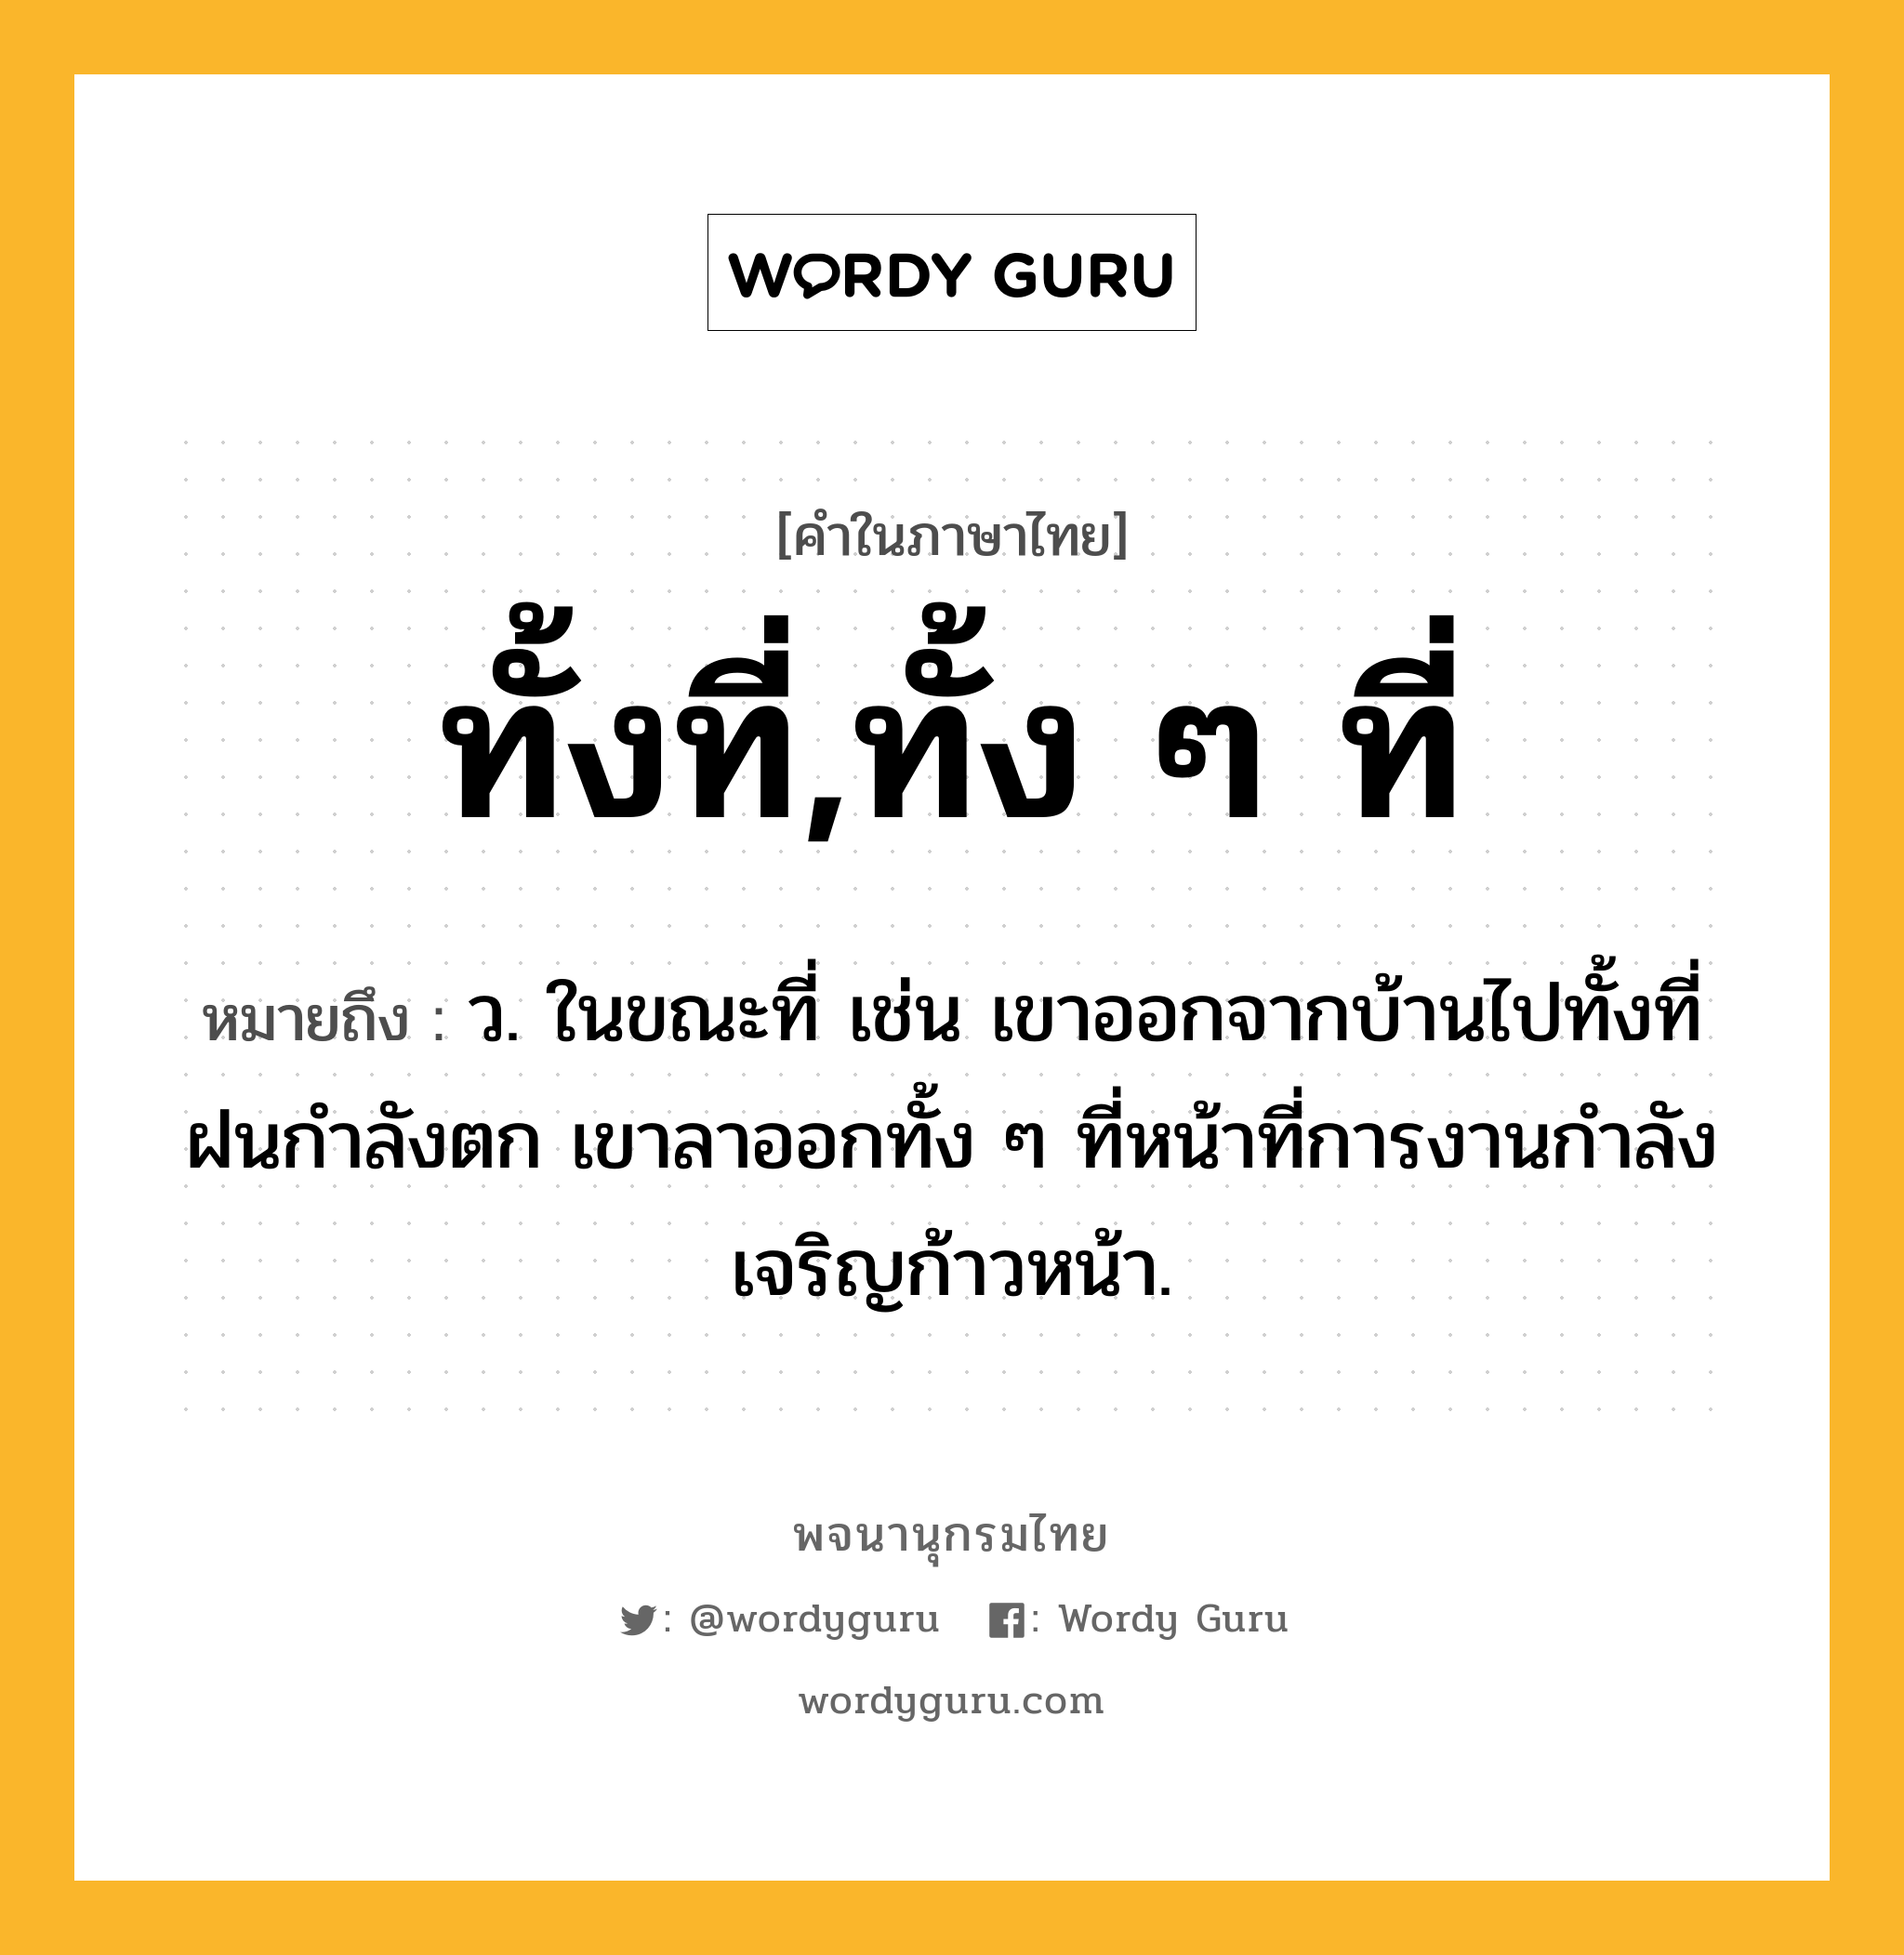 ทั้งที่,ทั้ง ๆ ที่ หมายถึงอะไร?, คำในภาษาไทย ทั้งที่,ทั้ง ๆ ที่ หมายถึง ว. ในขณะที่ เช่น เขาออกจากบ้านไปทั้งที่ฝนกำลังตก เขาลาออกทั้ง ๆ ที่หน้าที่การงานกําลังเจริญก้าวหน้า.